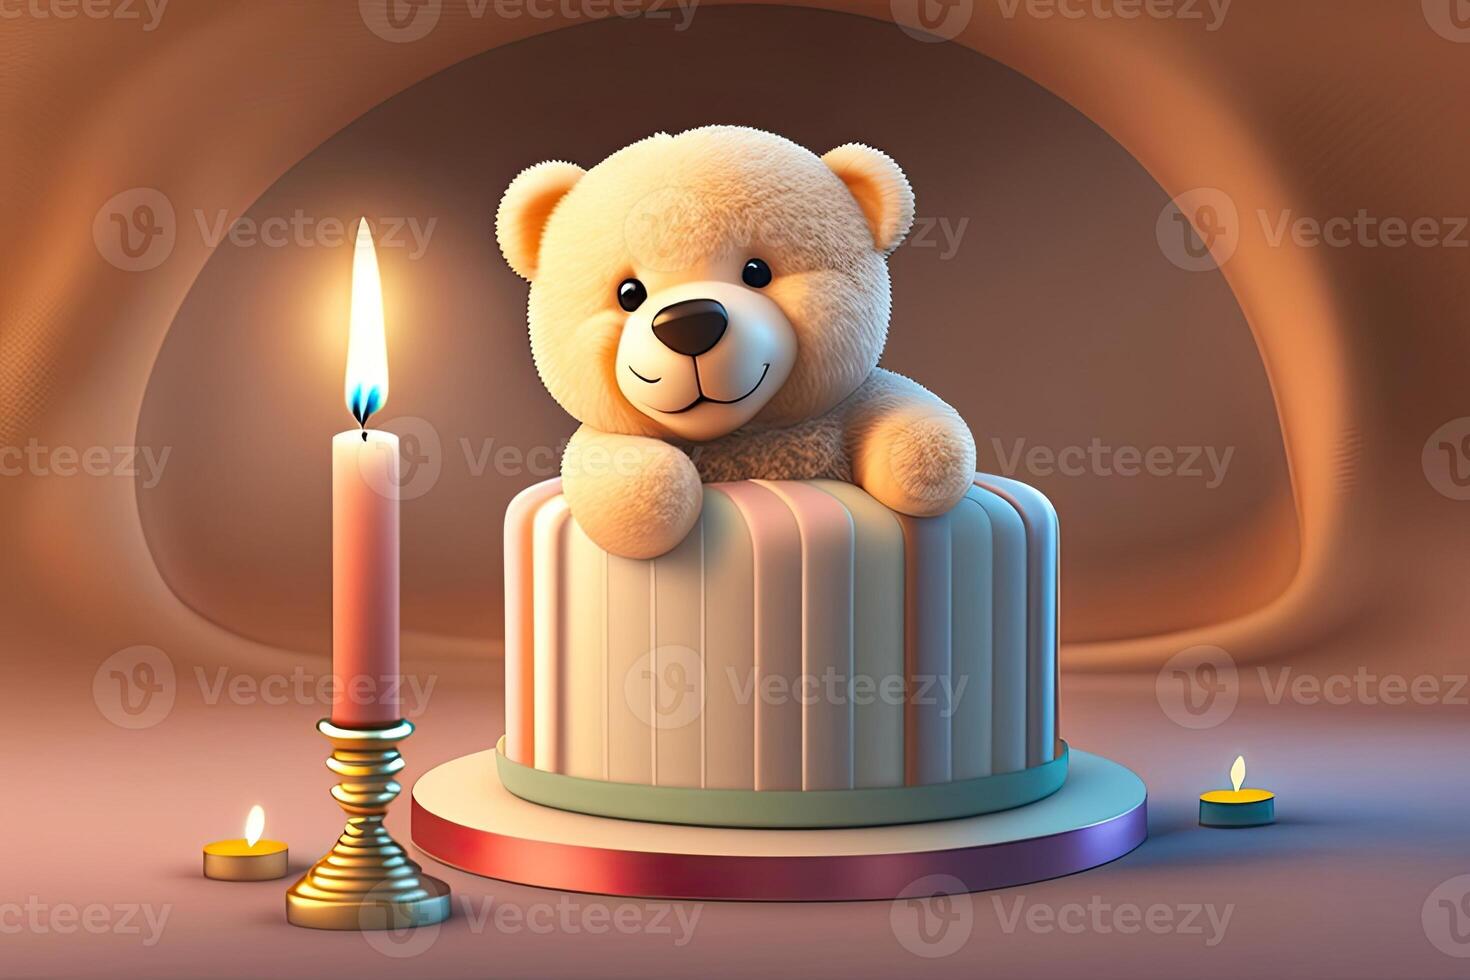 süß Beige Teddy Bär und Geburtstag Kuchen generativ ai foto